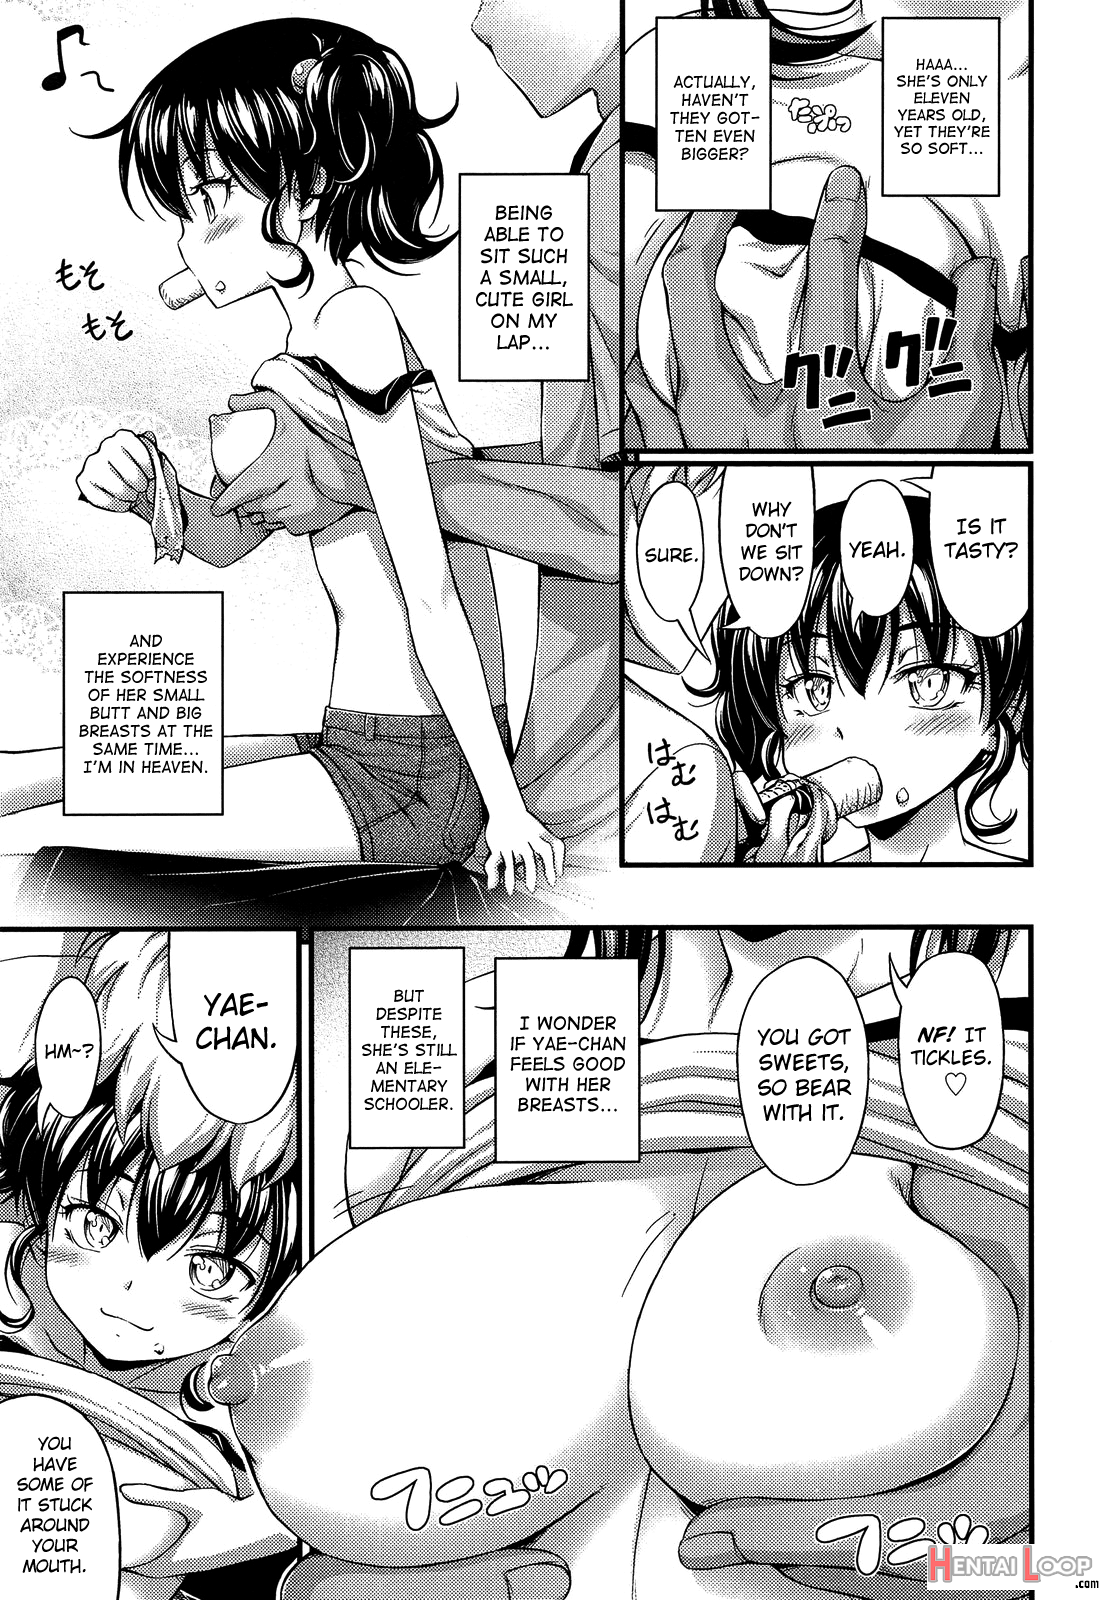 Okashina Ko page 3